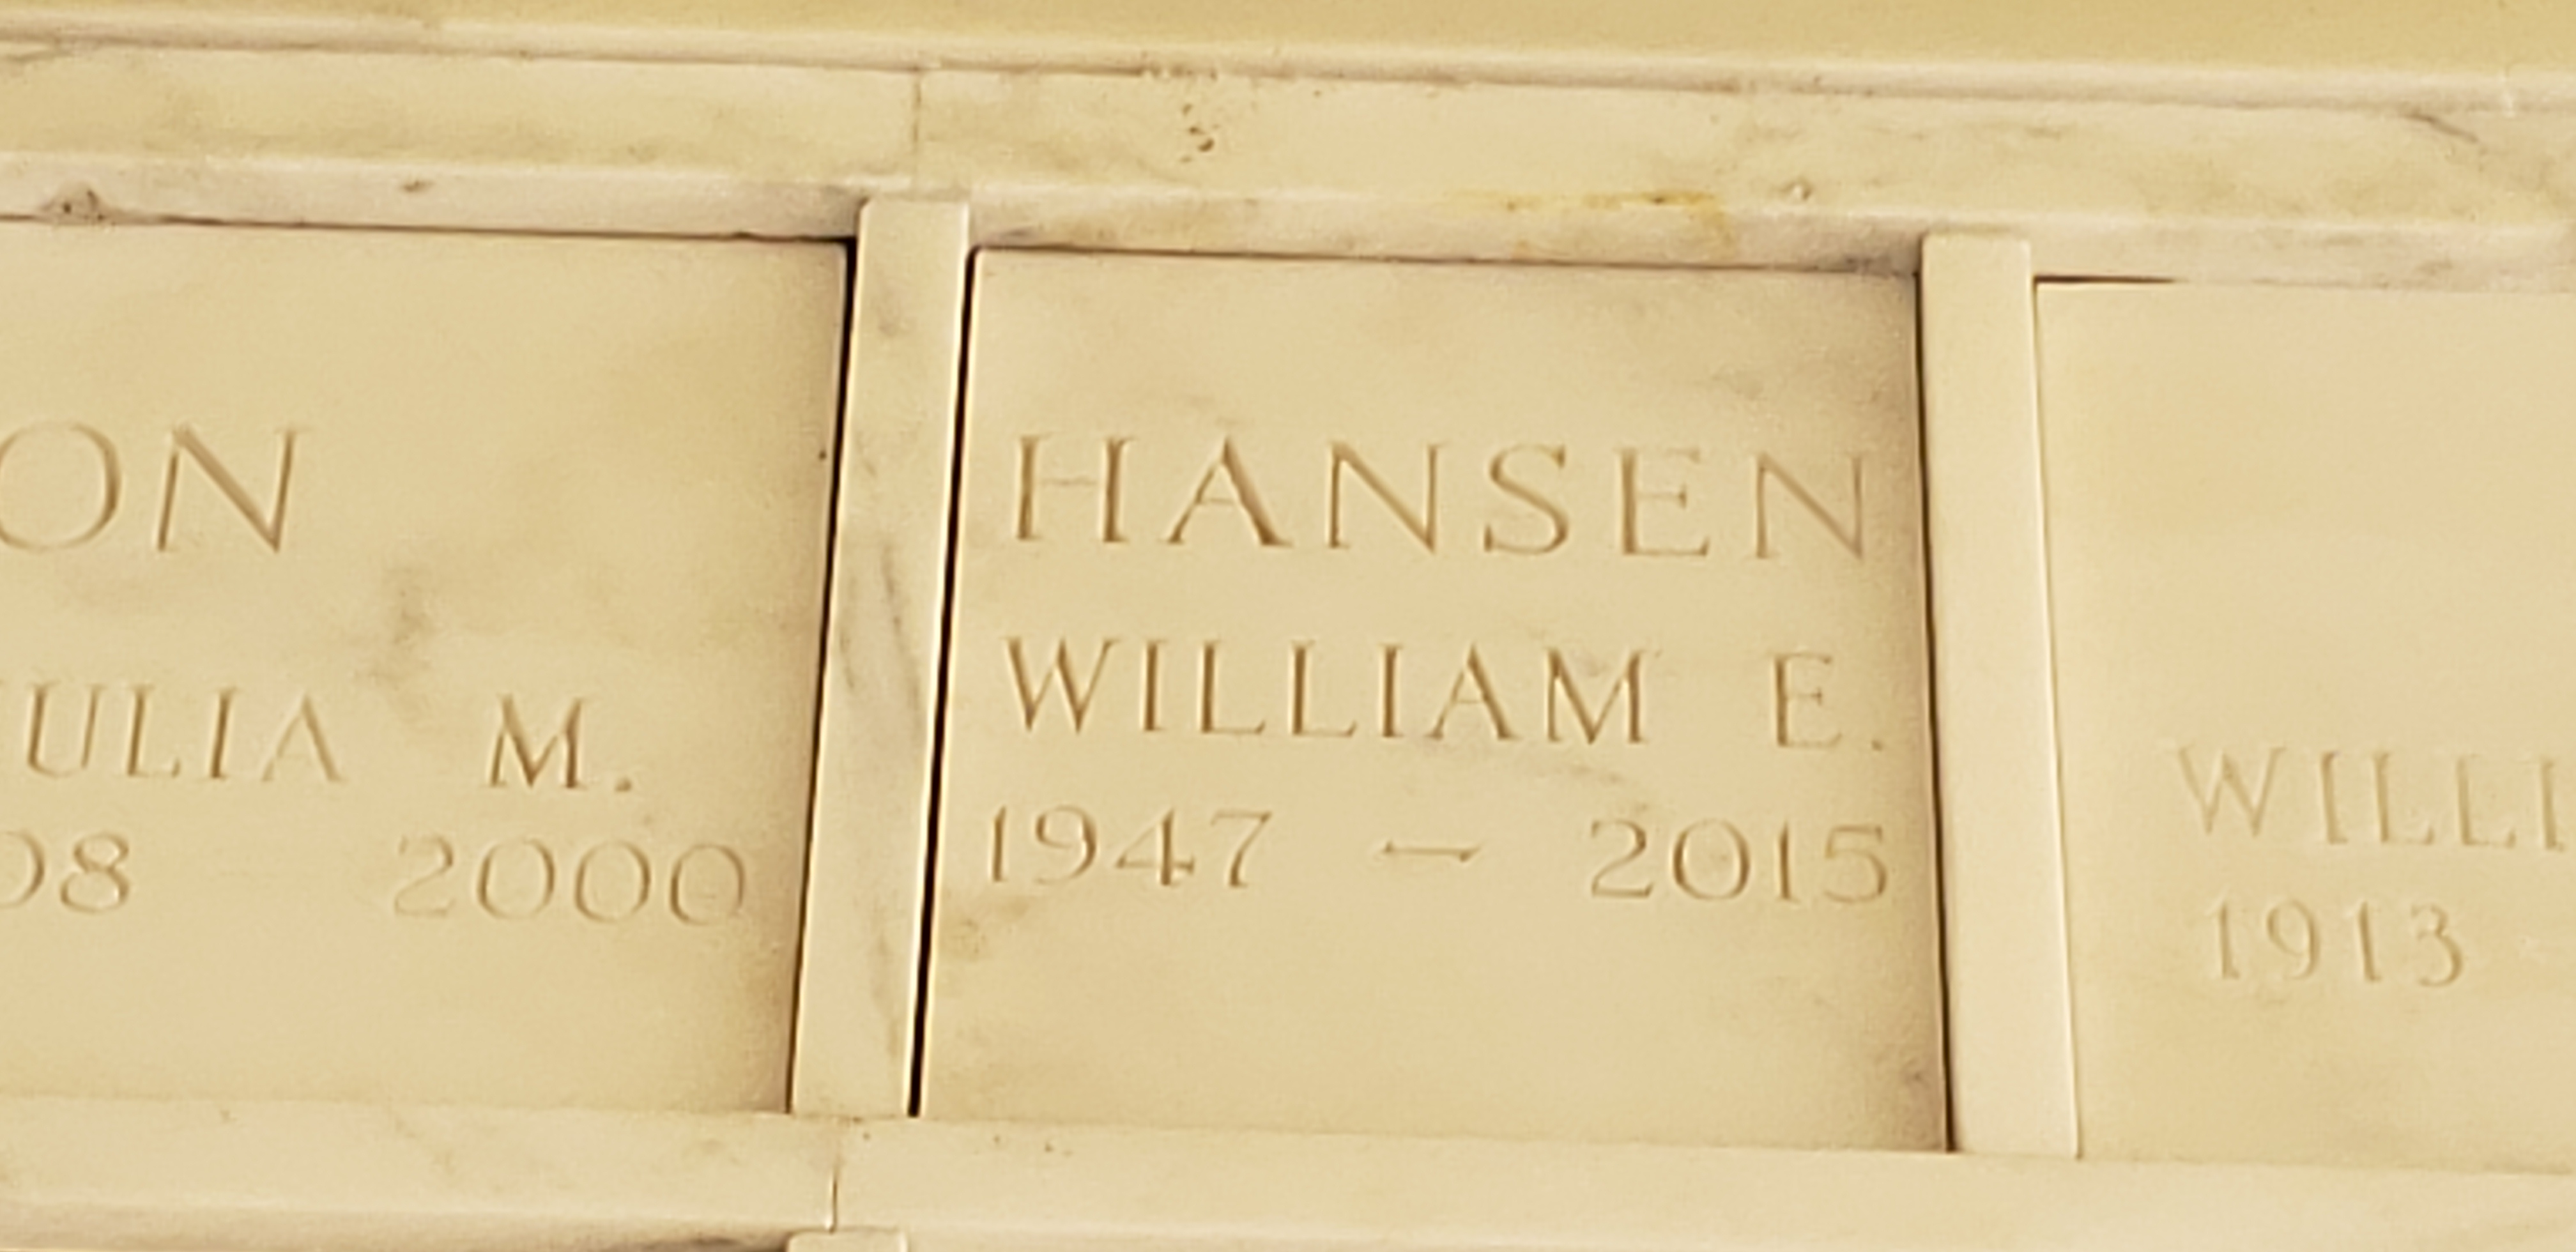 William E Hansen